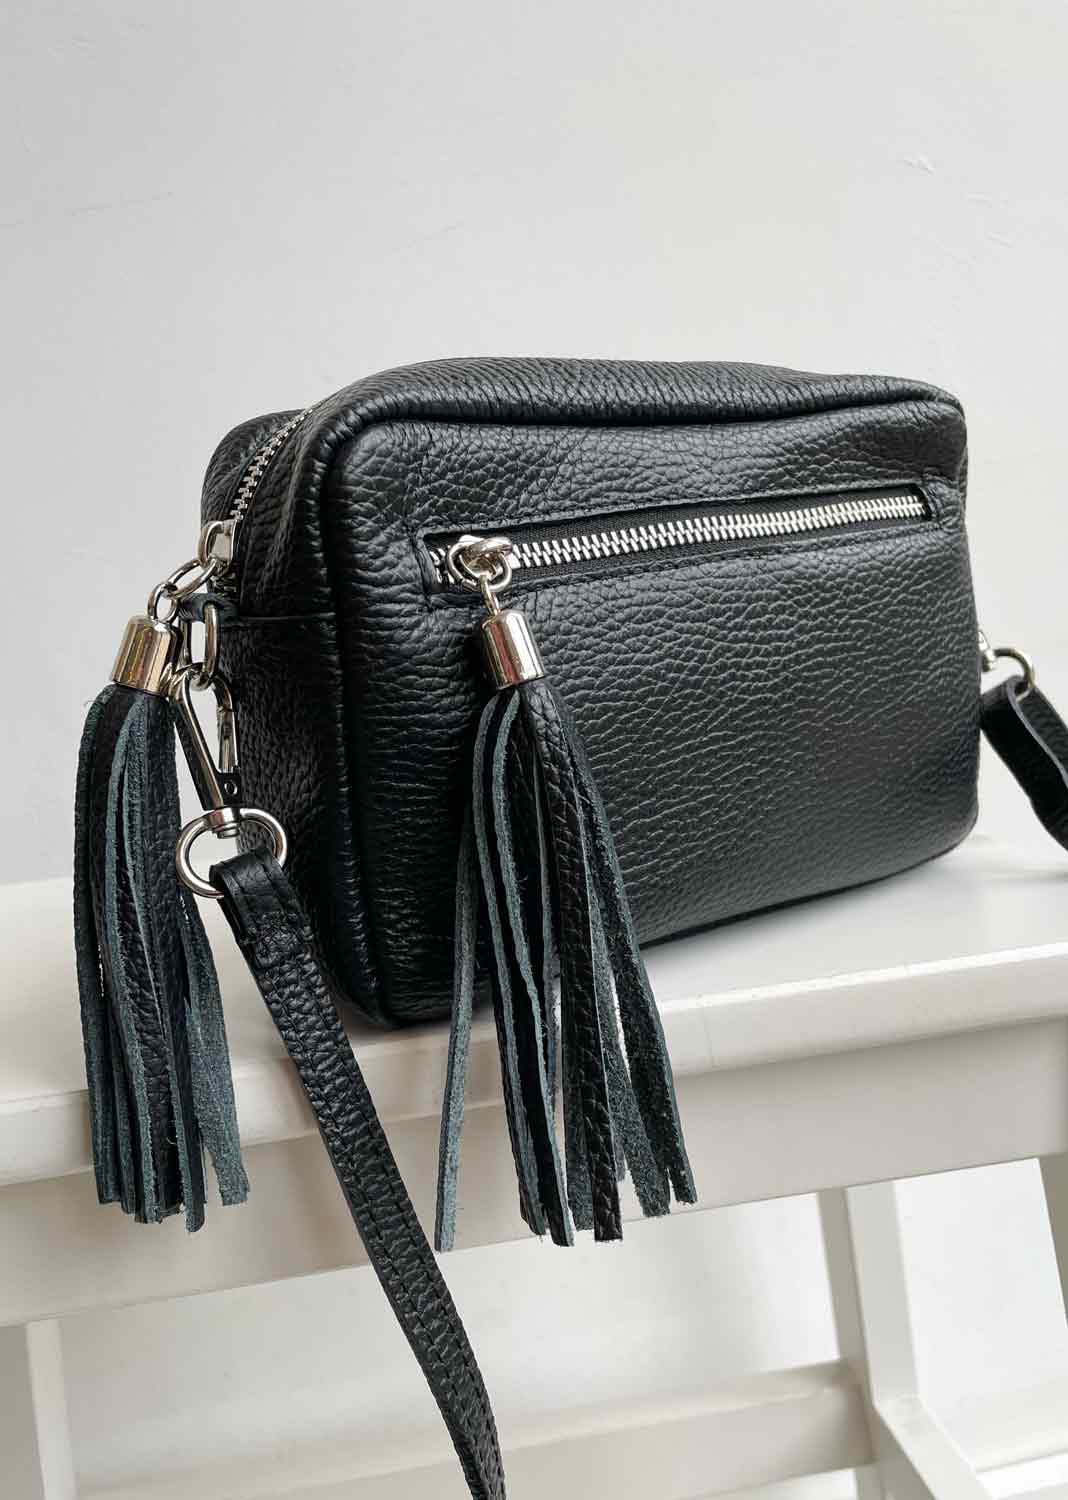 Leather Camera Bag - Black